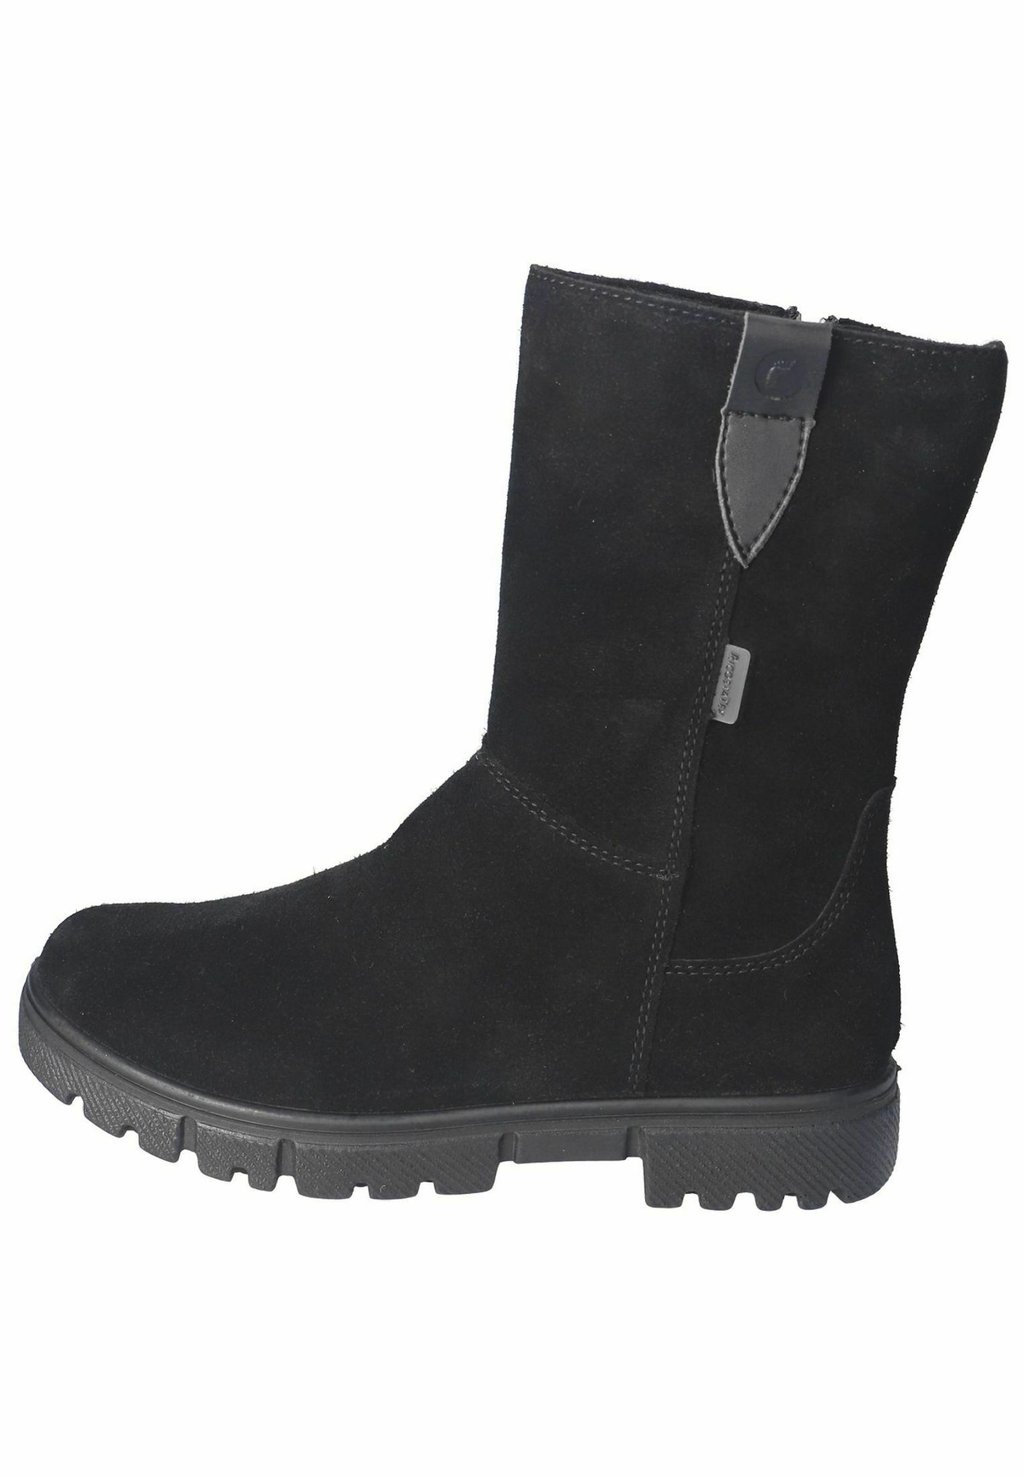 Снегоступы/зимние ботинки Ricosta, цвет schwarz